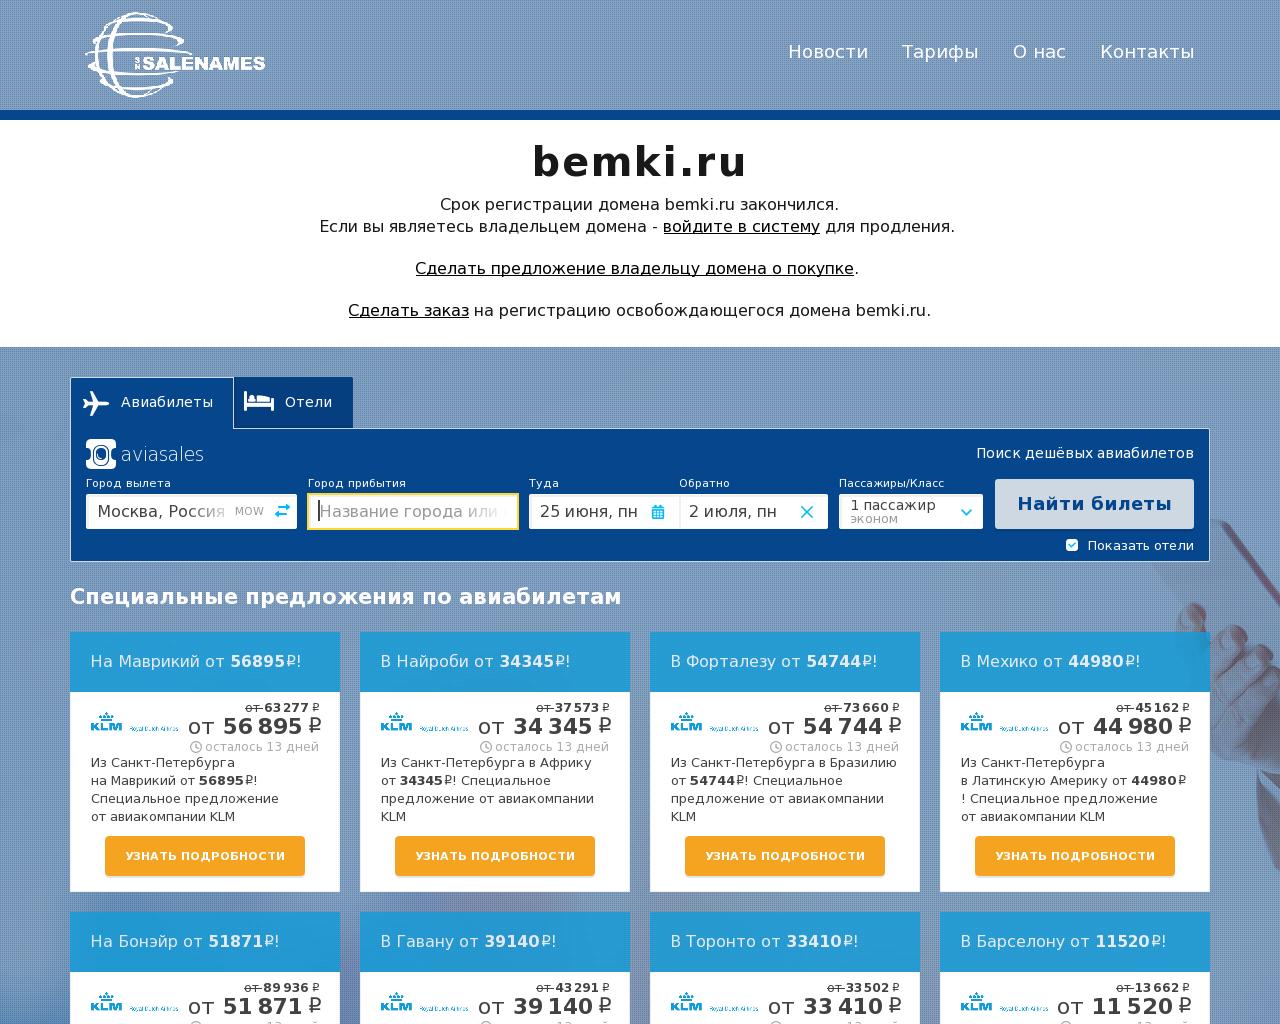 Изображение сайта bemki.ru в разрешении 1280x1024